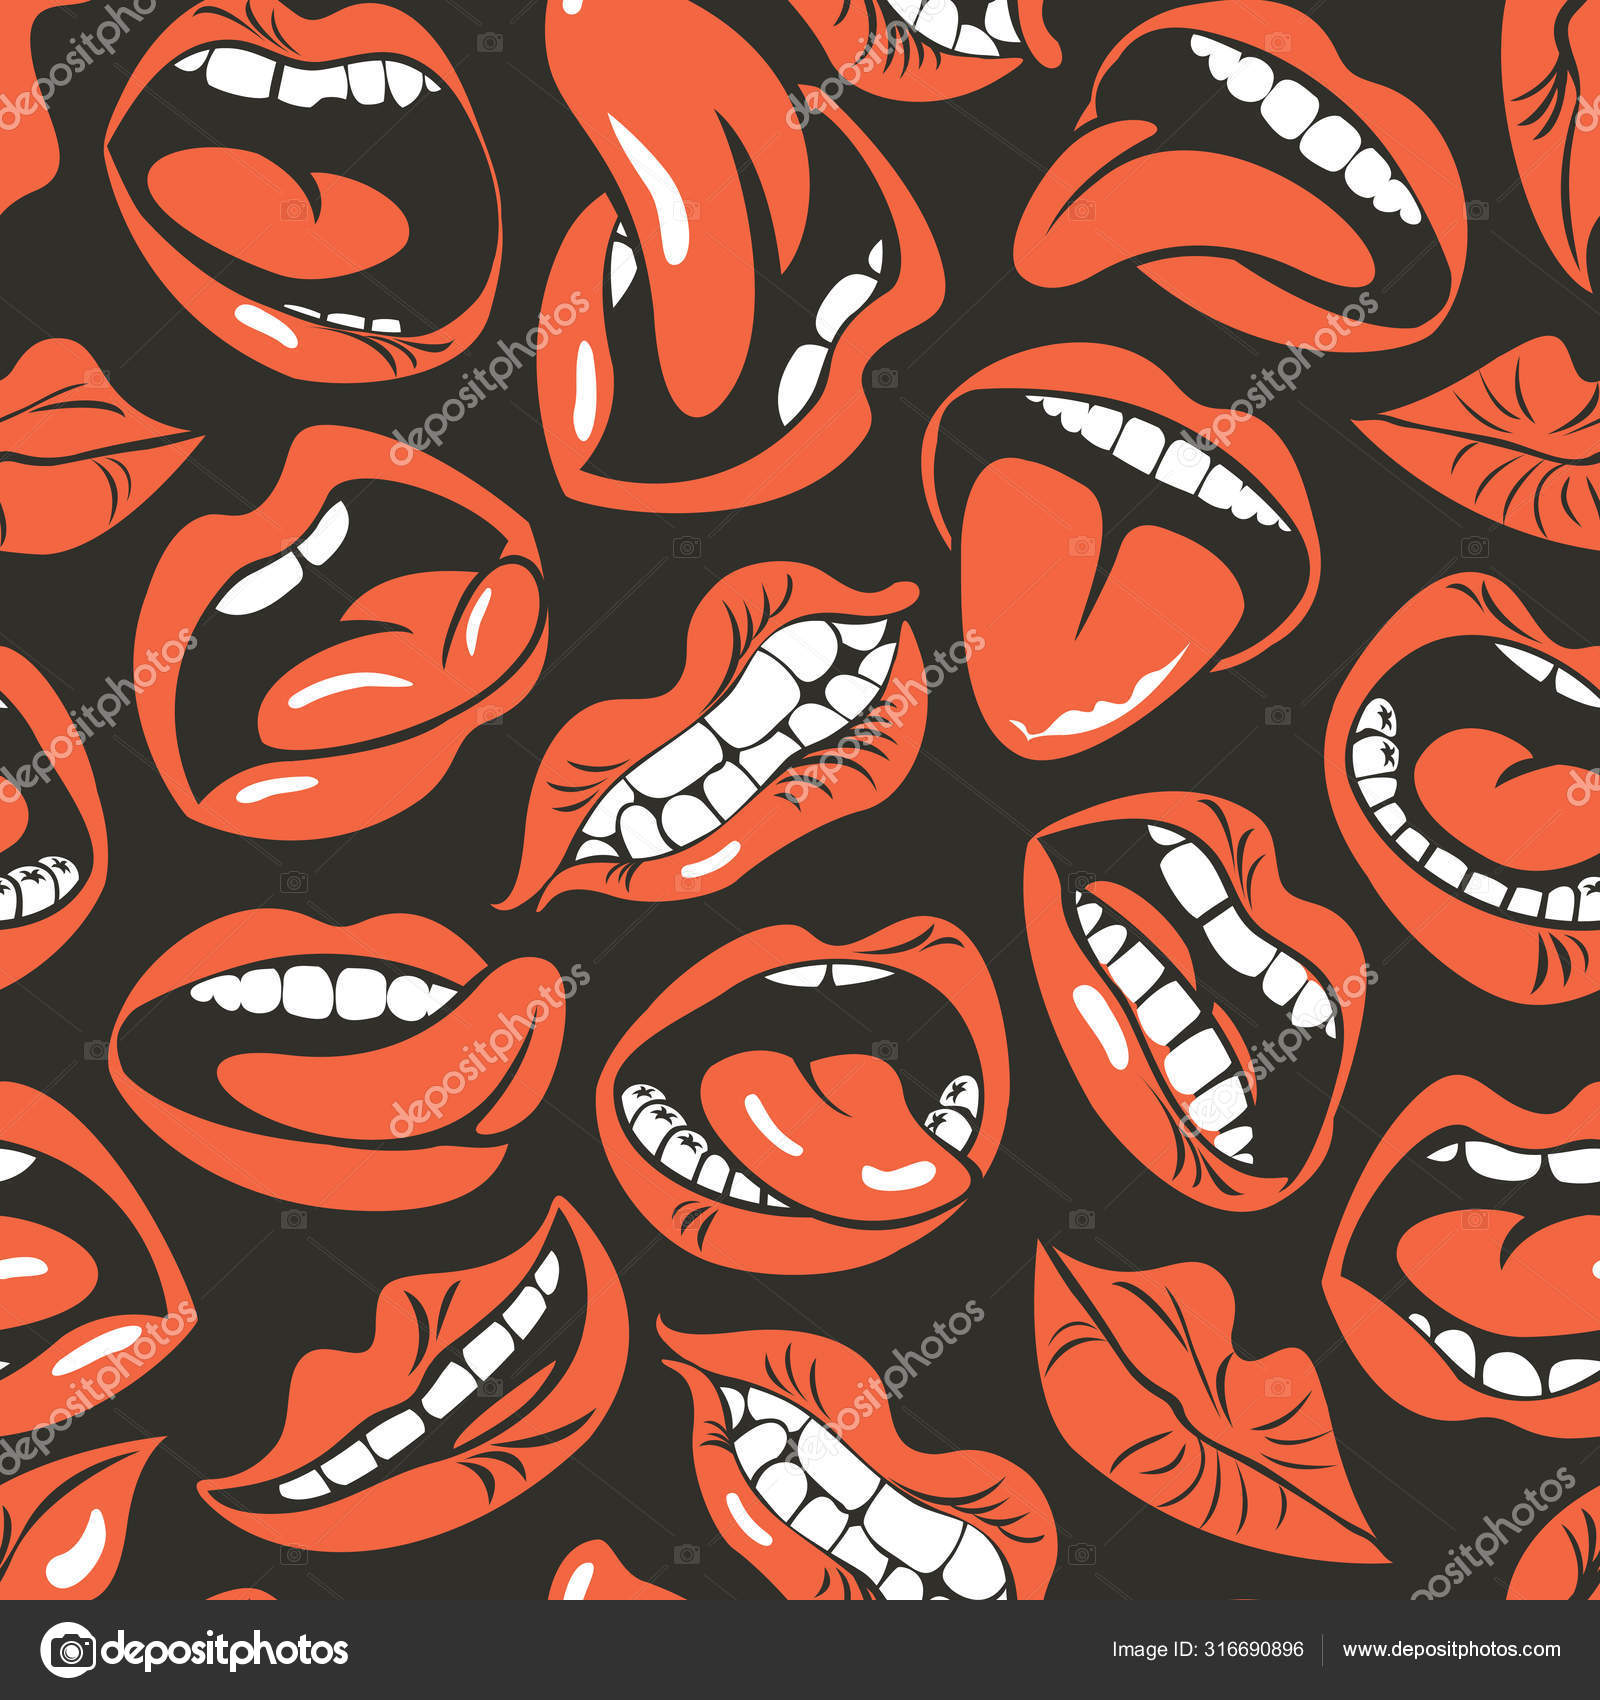 Várias opções de boca aberta com lábios, língua e dentes. bocas de desenho  animado com diferentes expressões. sorria com os dentes, a língua de fora,  surpreso. desenho animado